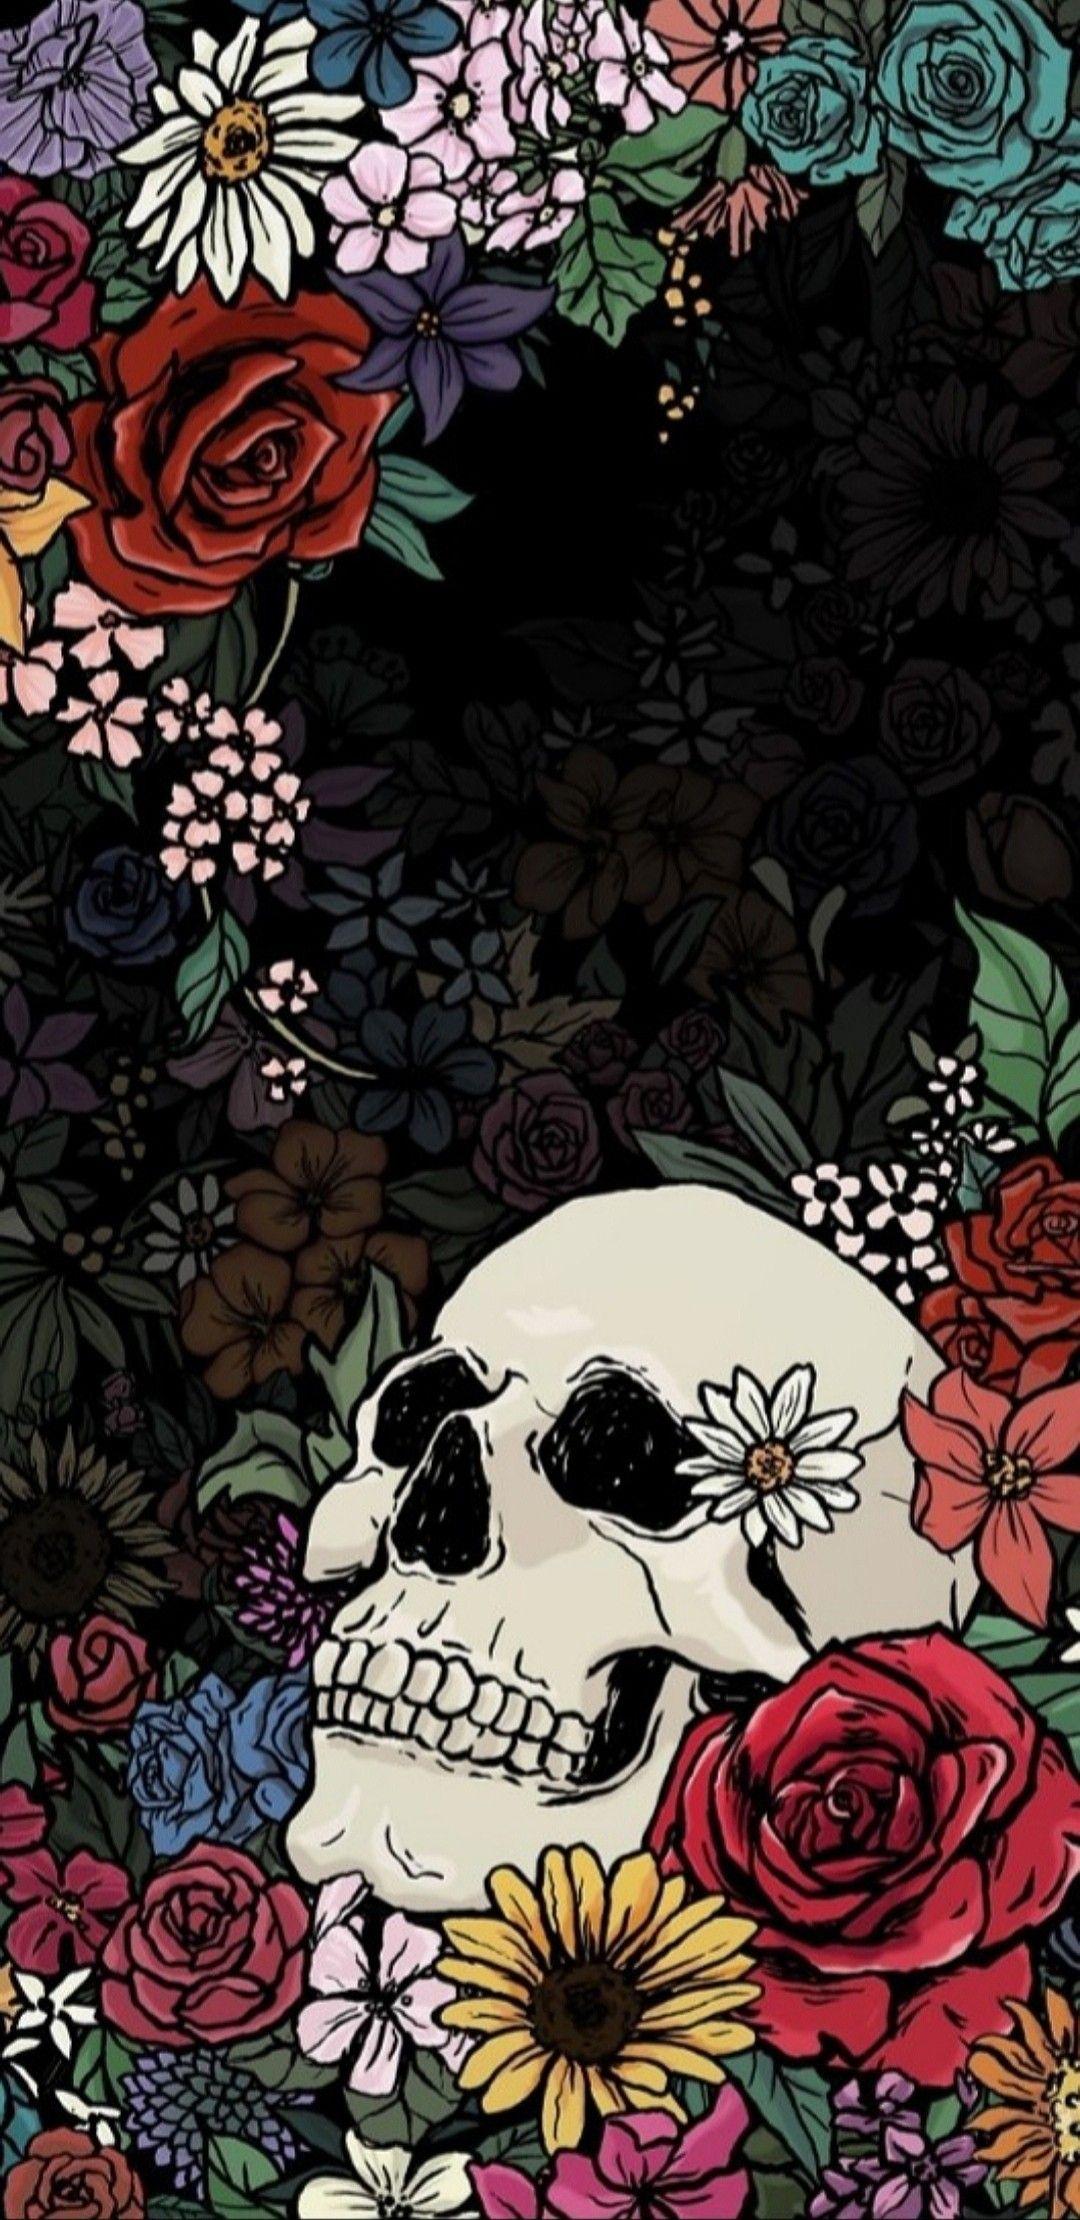 Skull / Skeleton Wallpaper. Skull wallpaper, Wallpaper background, Skull art